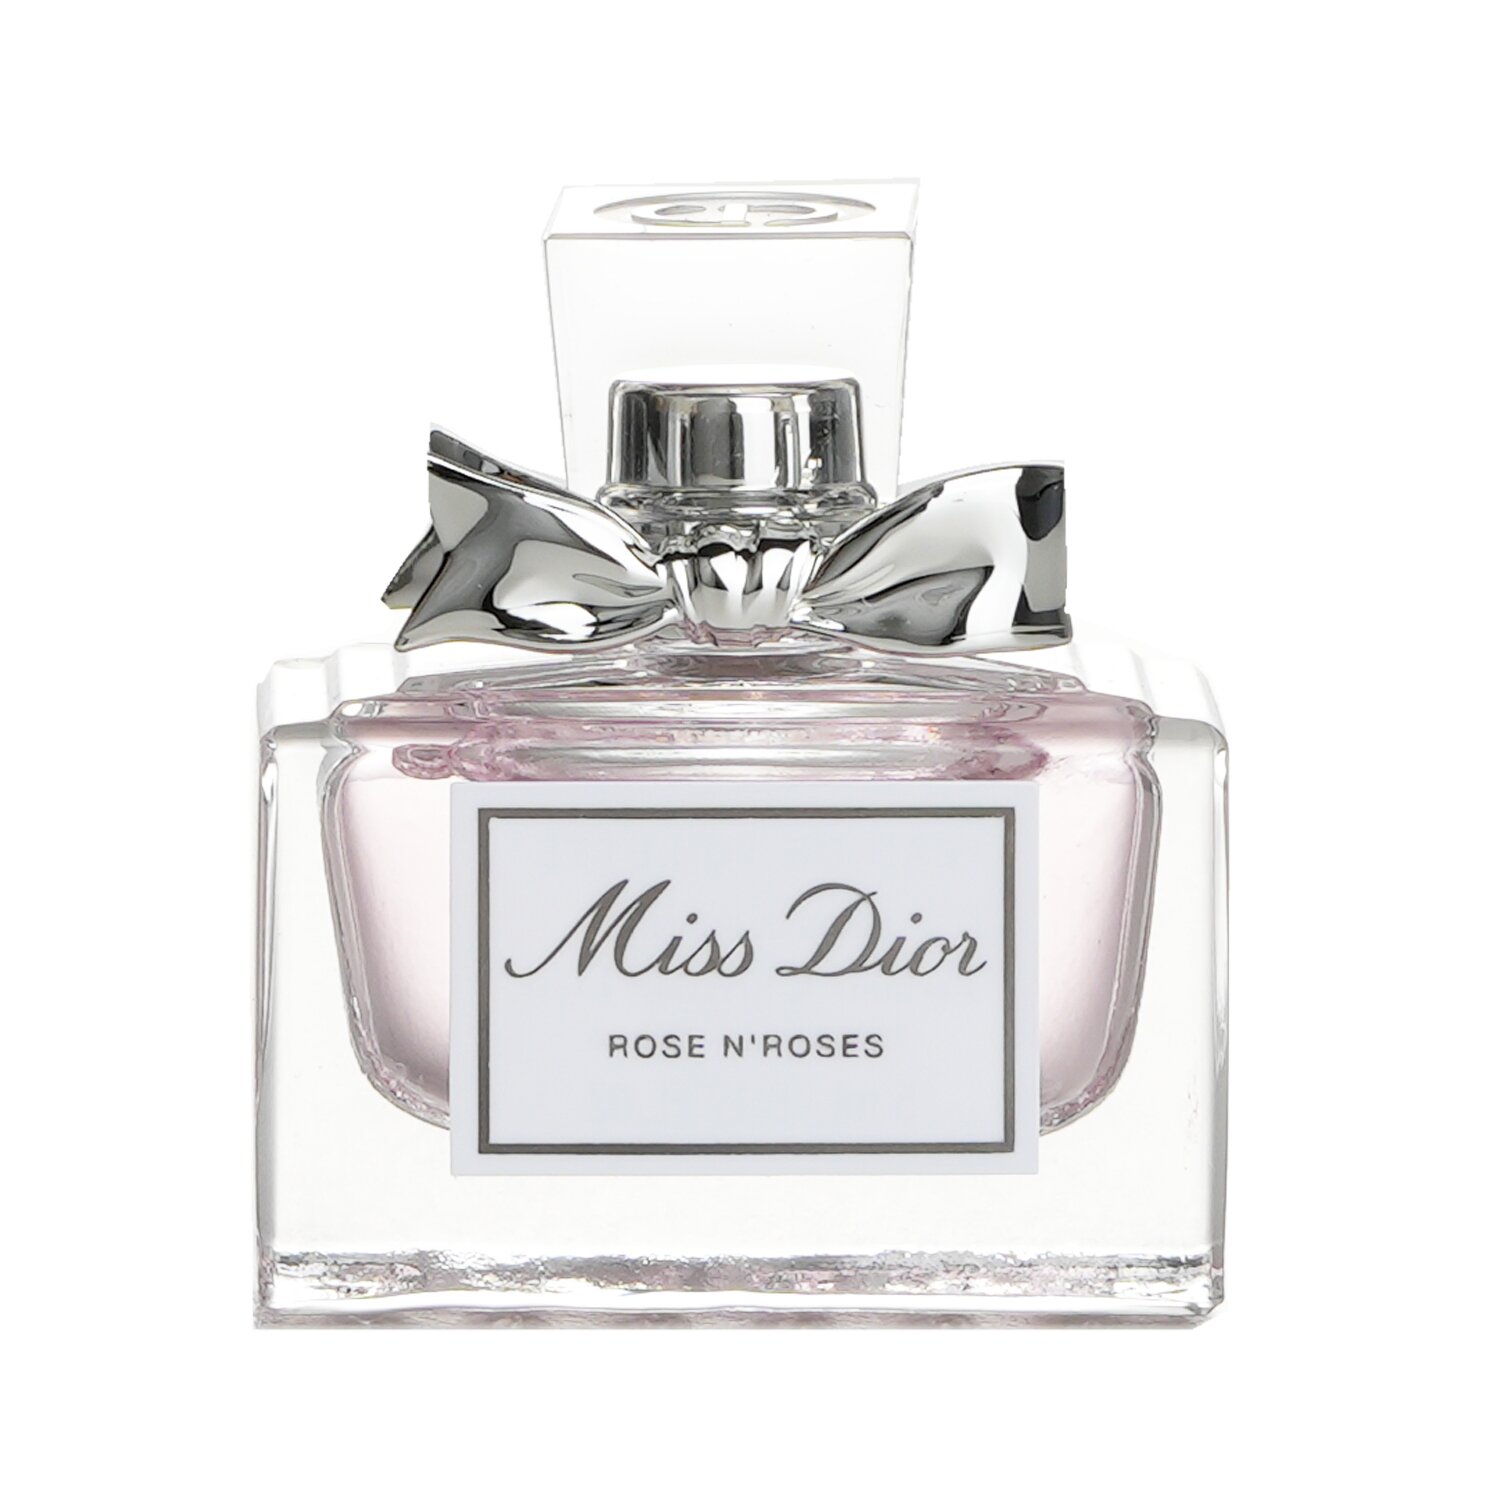 迪奧 Christian Dior - MISS DIOR ROSE N'ROSES 淡香薰